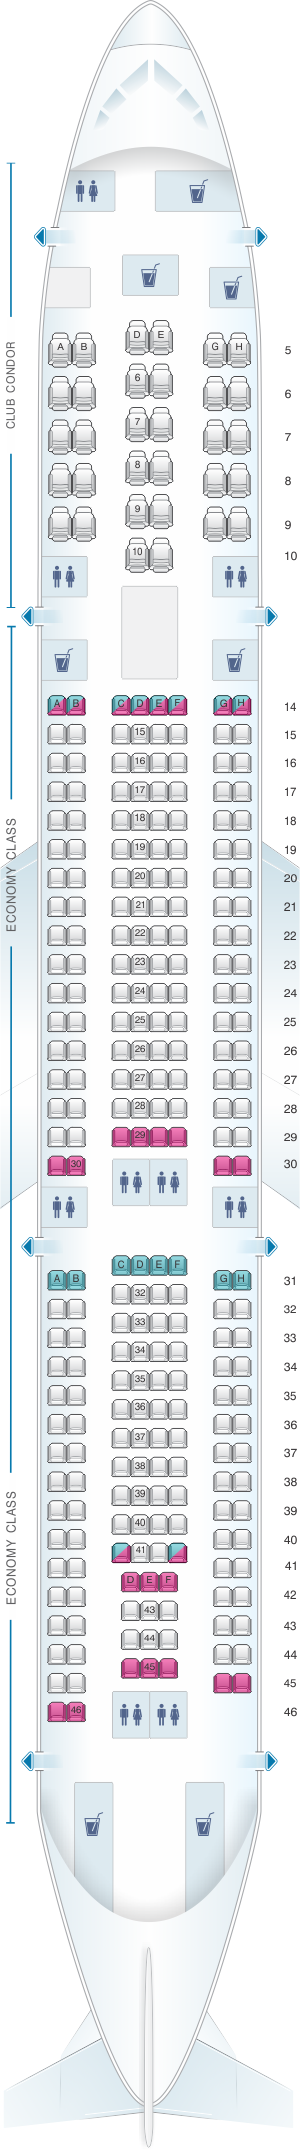 Mapa de asientos del Airbus A330-300